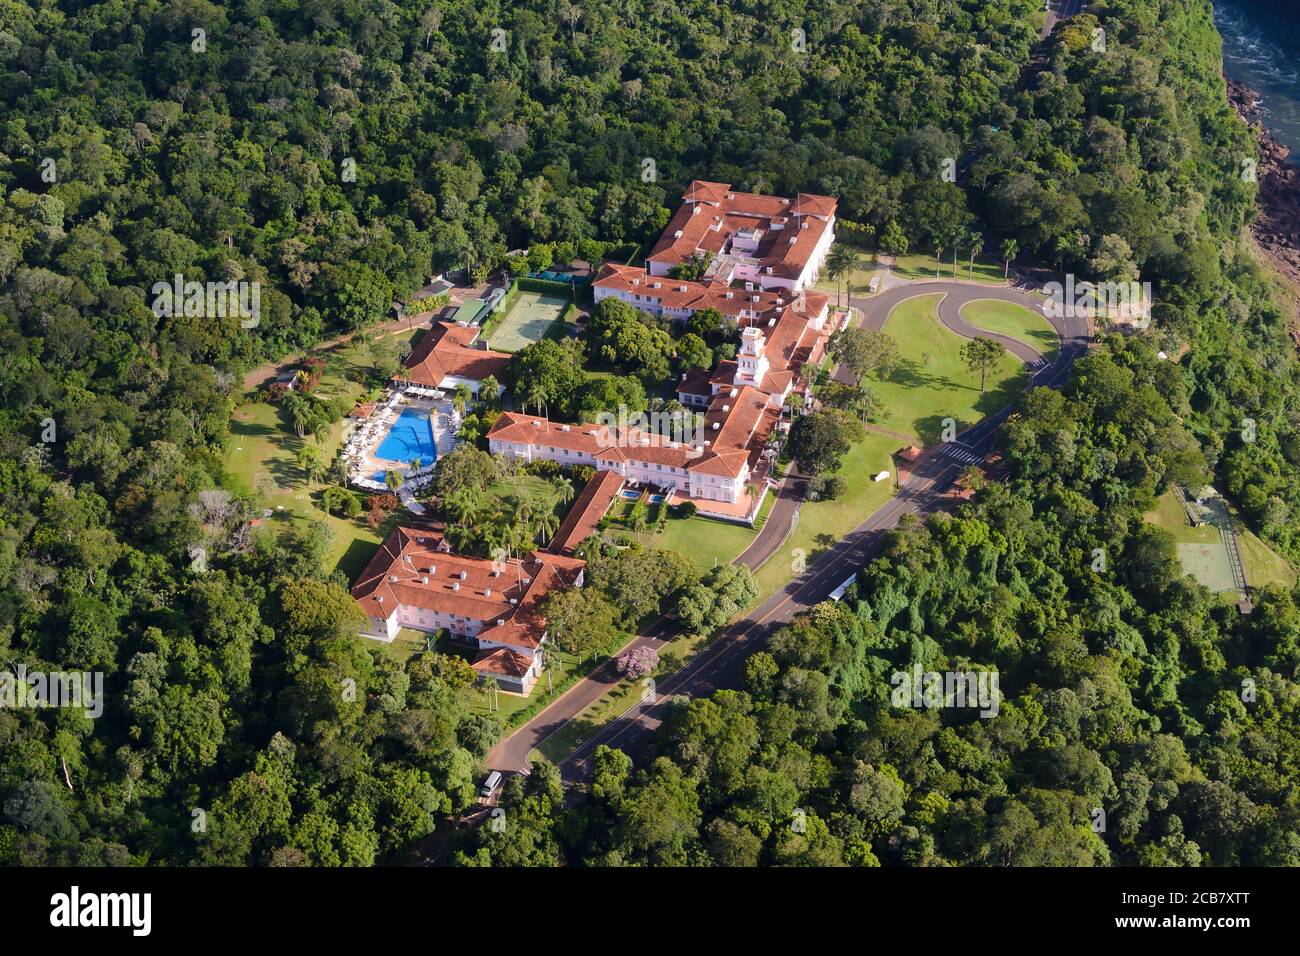 Luftaufnahme des Belmond Hotel das Cataratas Luxusimmobilie im Nationalpark von Iguassu, Brasilien. Gebäude im portugiesischen Kolonialstil. Stockfoto